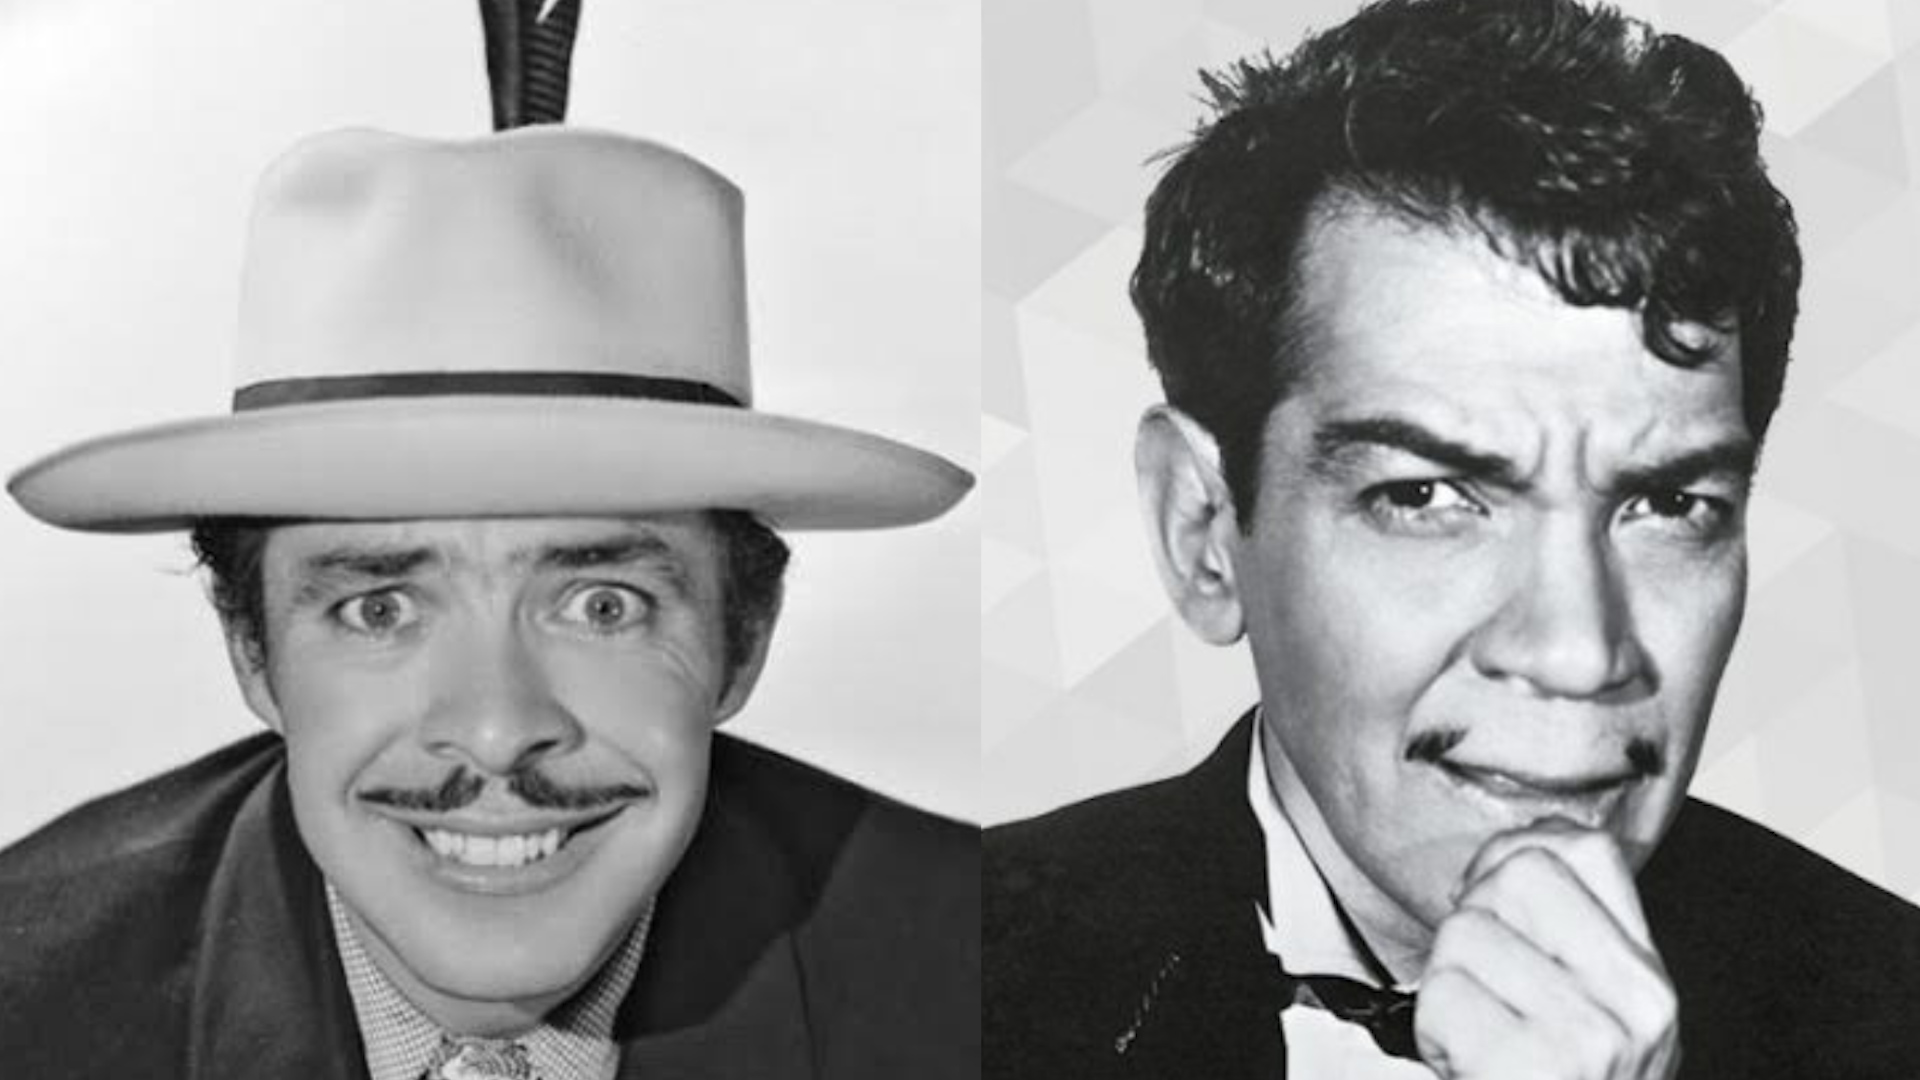 Tin Tan o Cantinflas: quién fue el mejor cómico mexicano de la historia